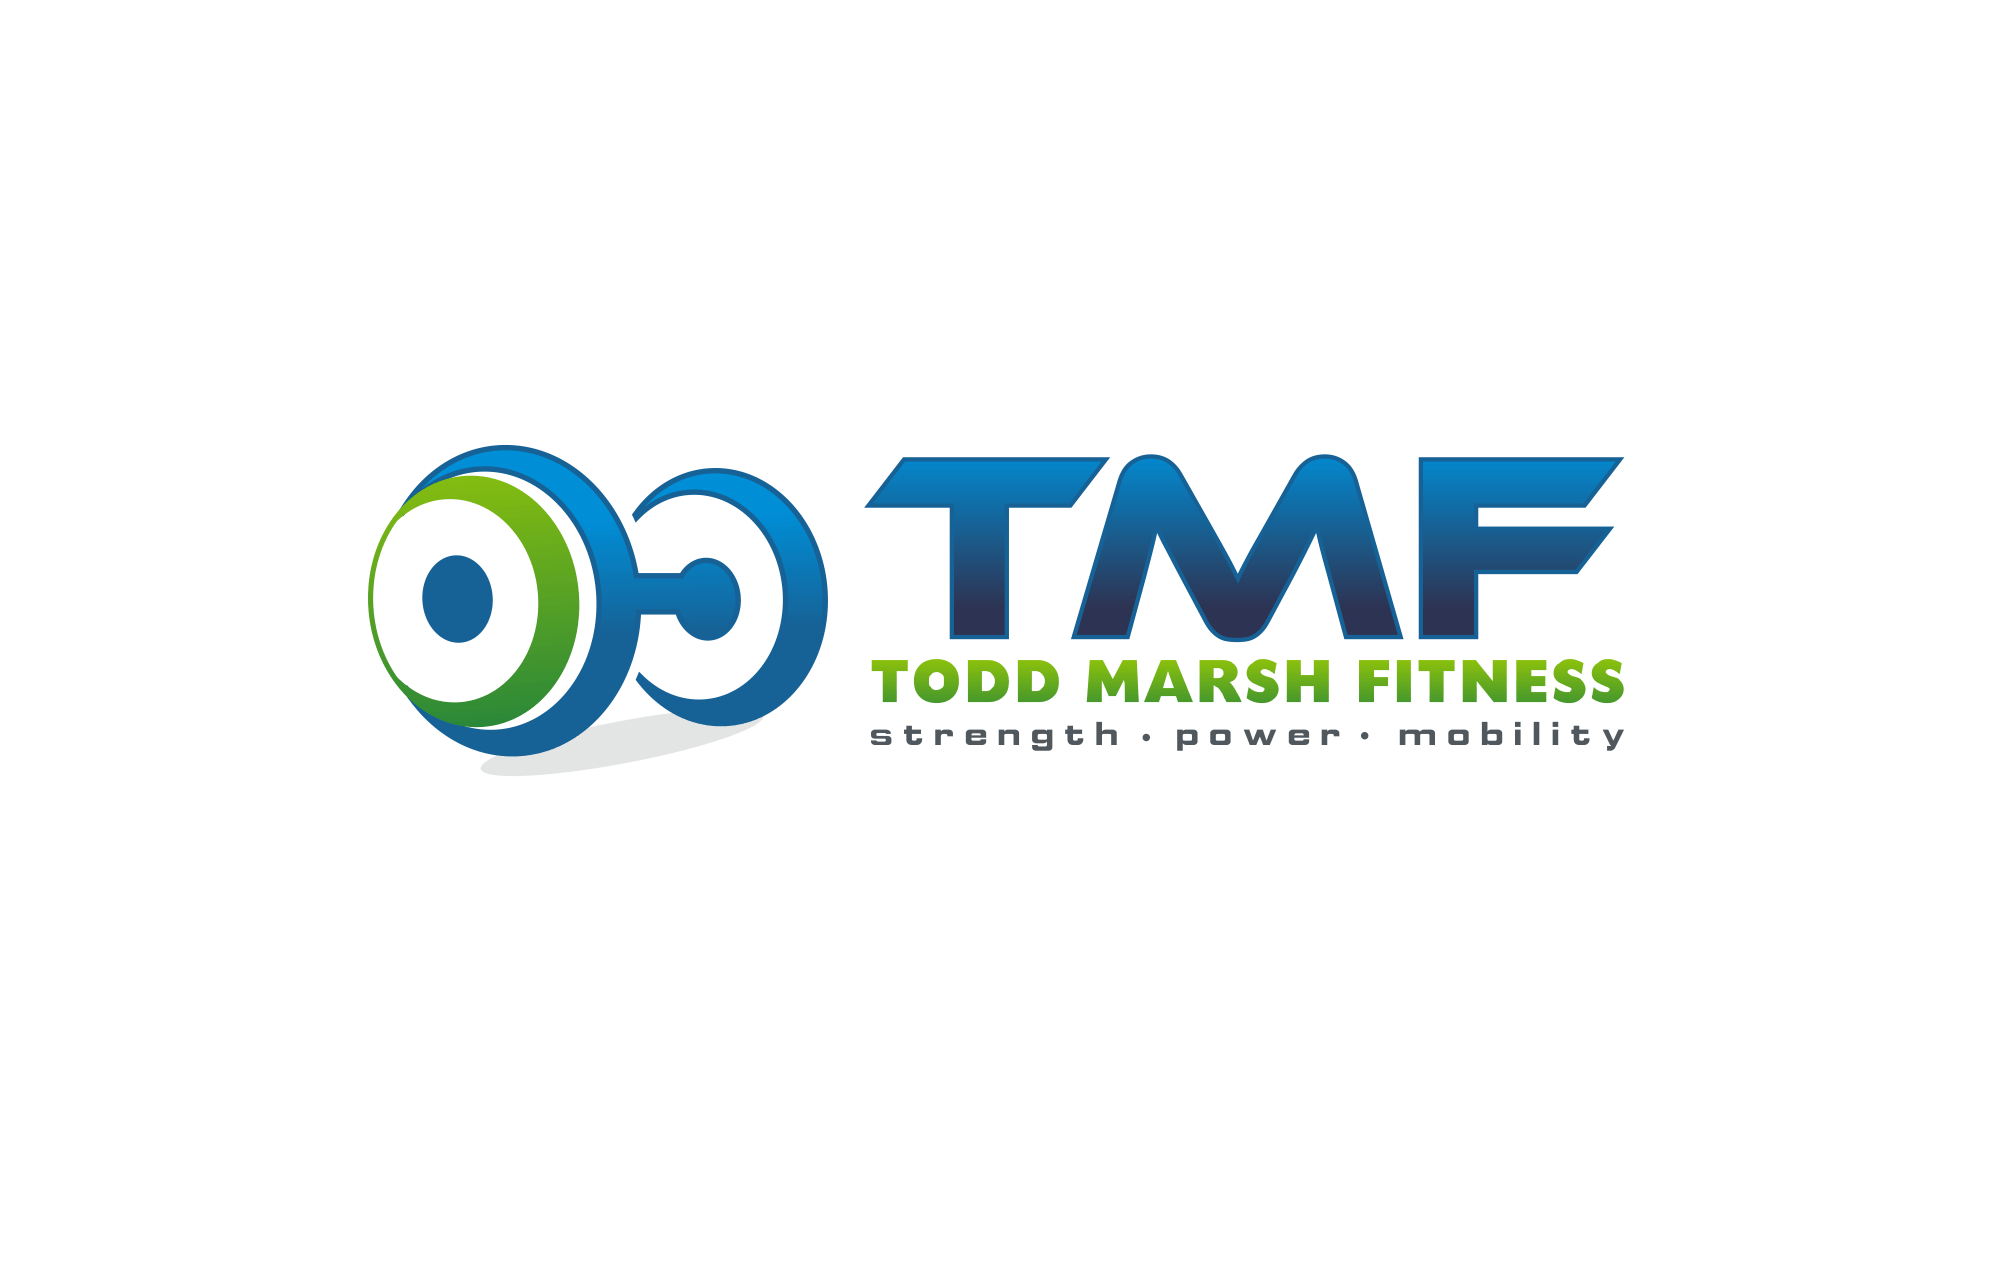 TMF Logo - Todd Marsh Fitness's Logo Revealed